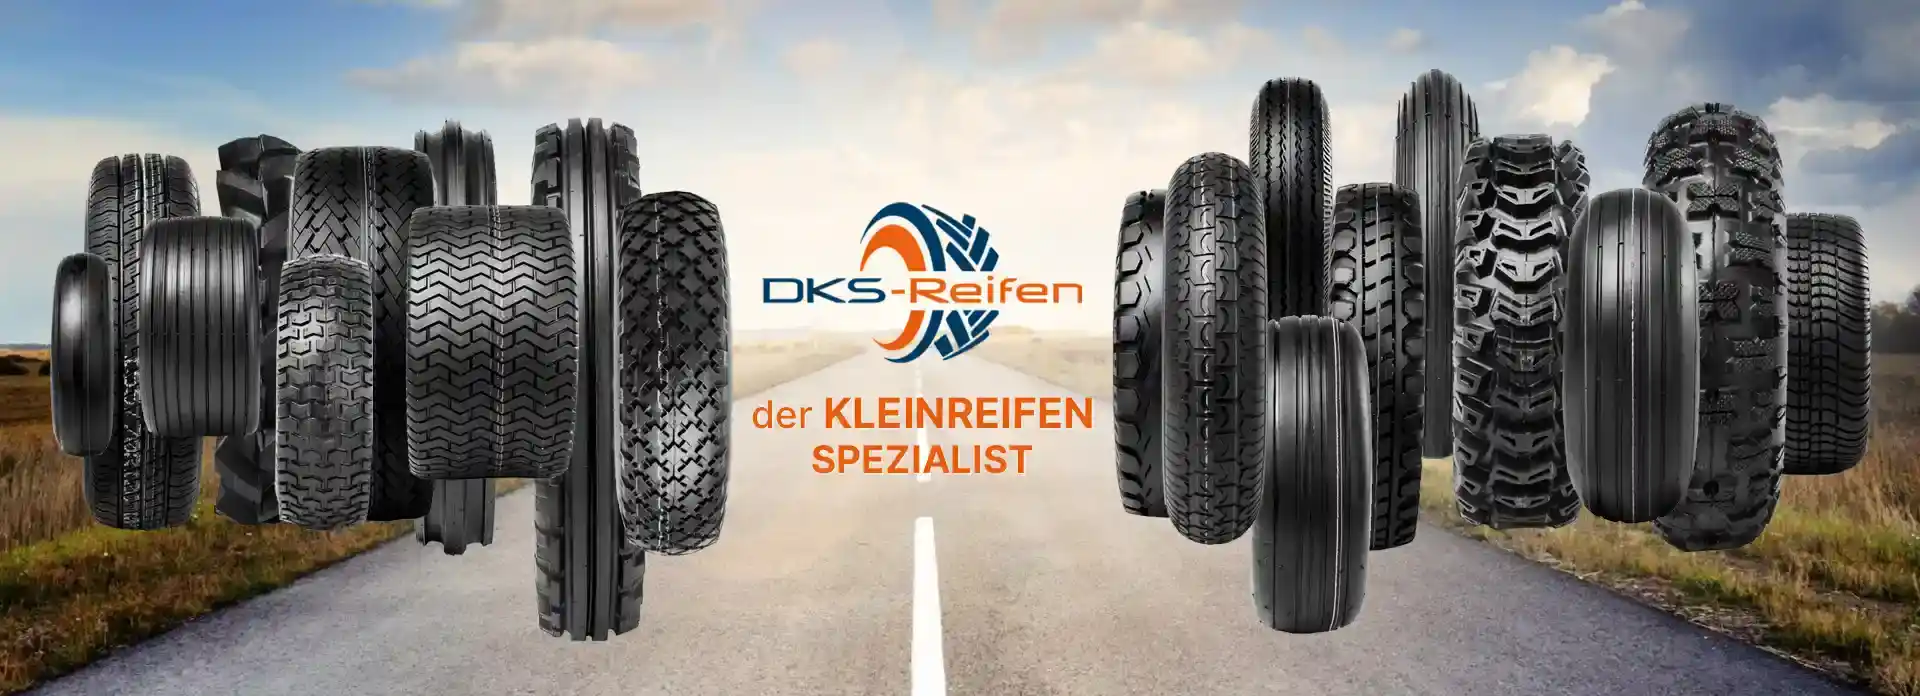 DKS Reifen: Onlineshop für Reifen und Räder für Rasentraktoren, landwirtschaftliche Maschinen, Heumaschinen, Schubkarren, Sackkarren, Anhänger, Maschinen und Kleingeräte